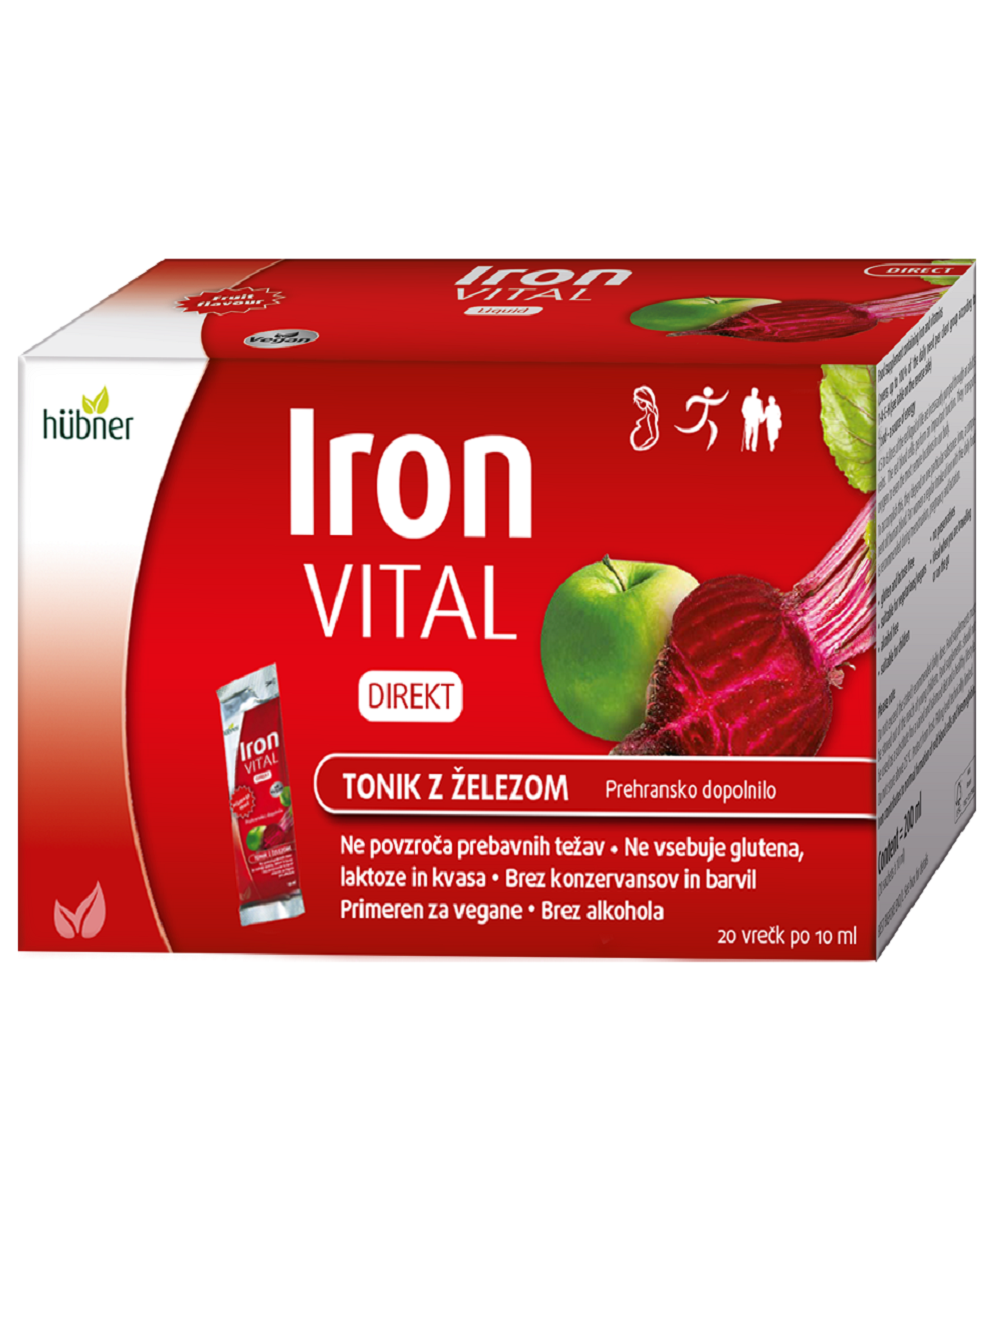 Iron Vital Direkt napitek z železom v vrečkah, 20 vrečk po 10 ml